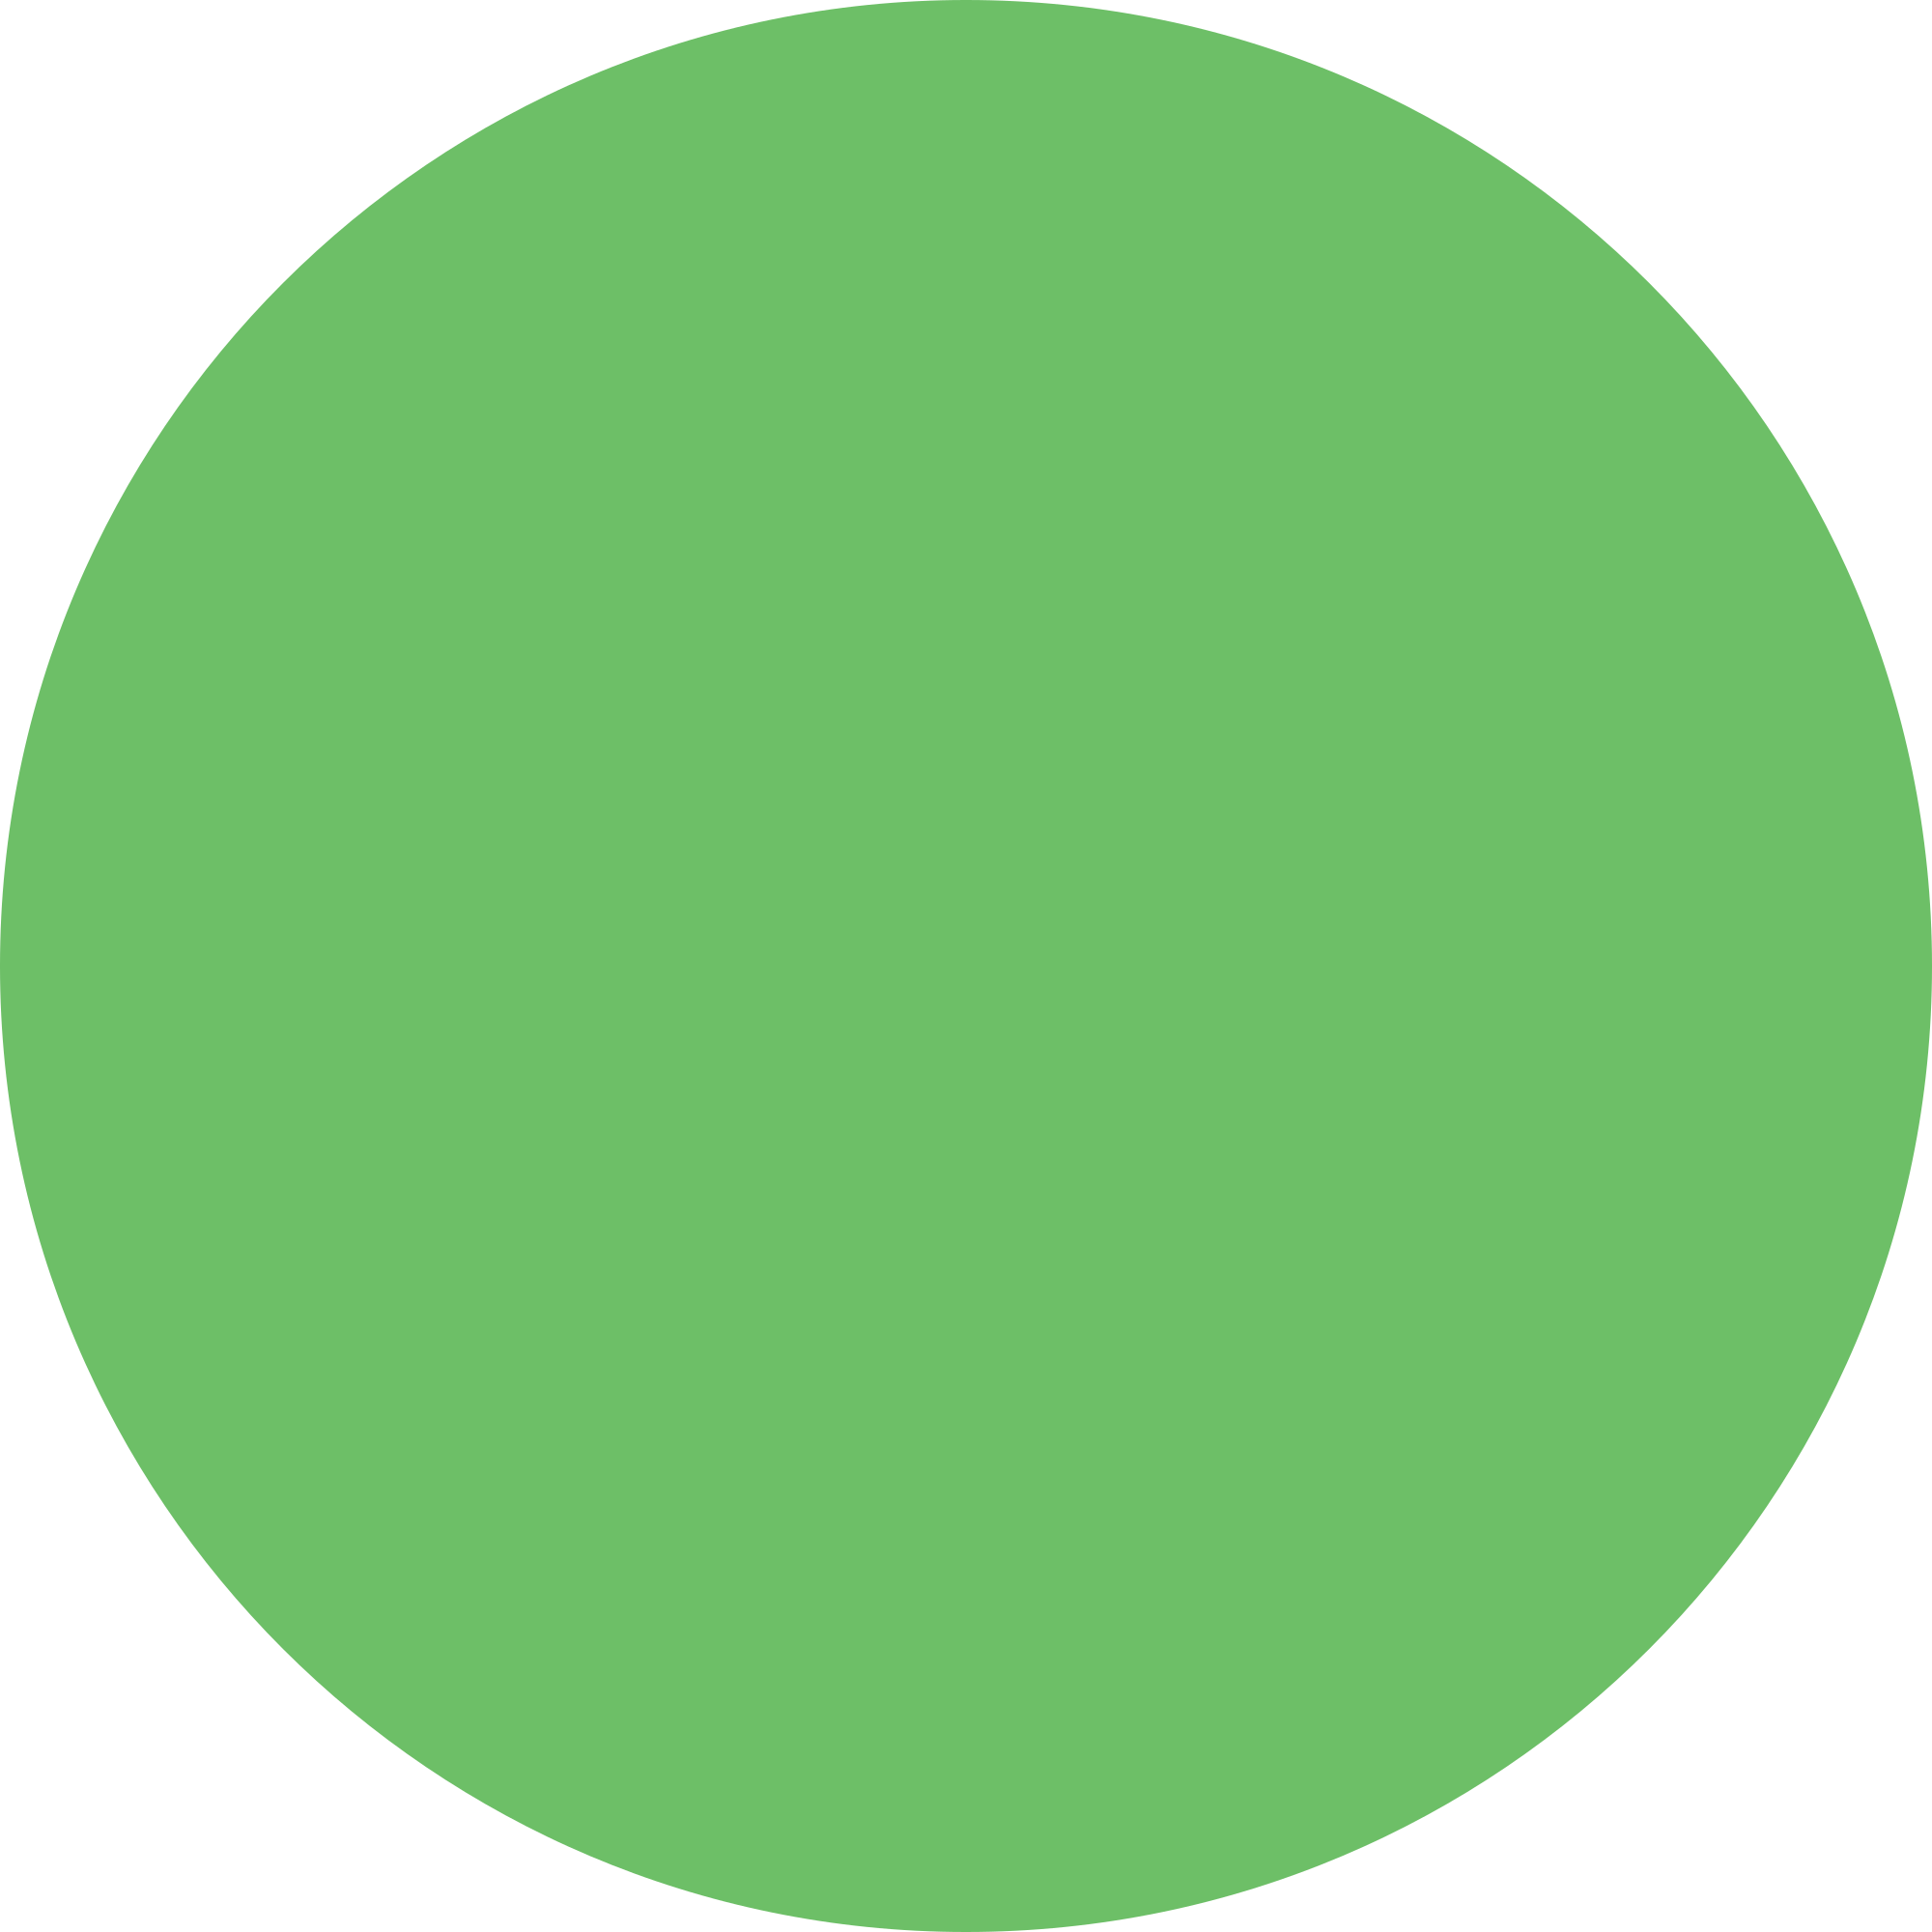 Lacmta Circle Green Line - Green Circle Ski Sign (2000x2000)